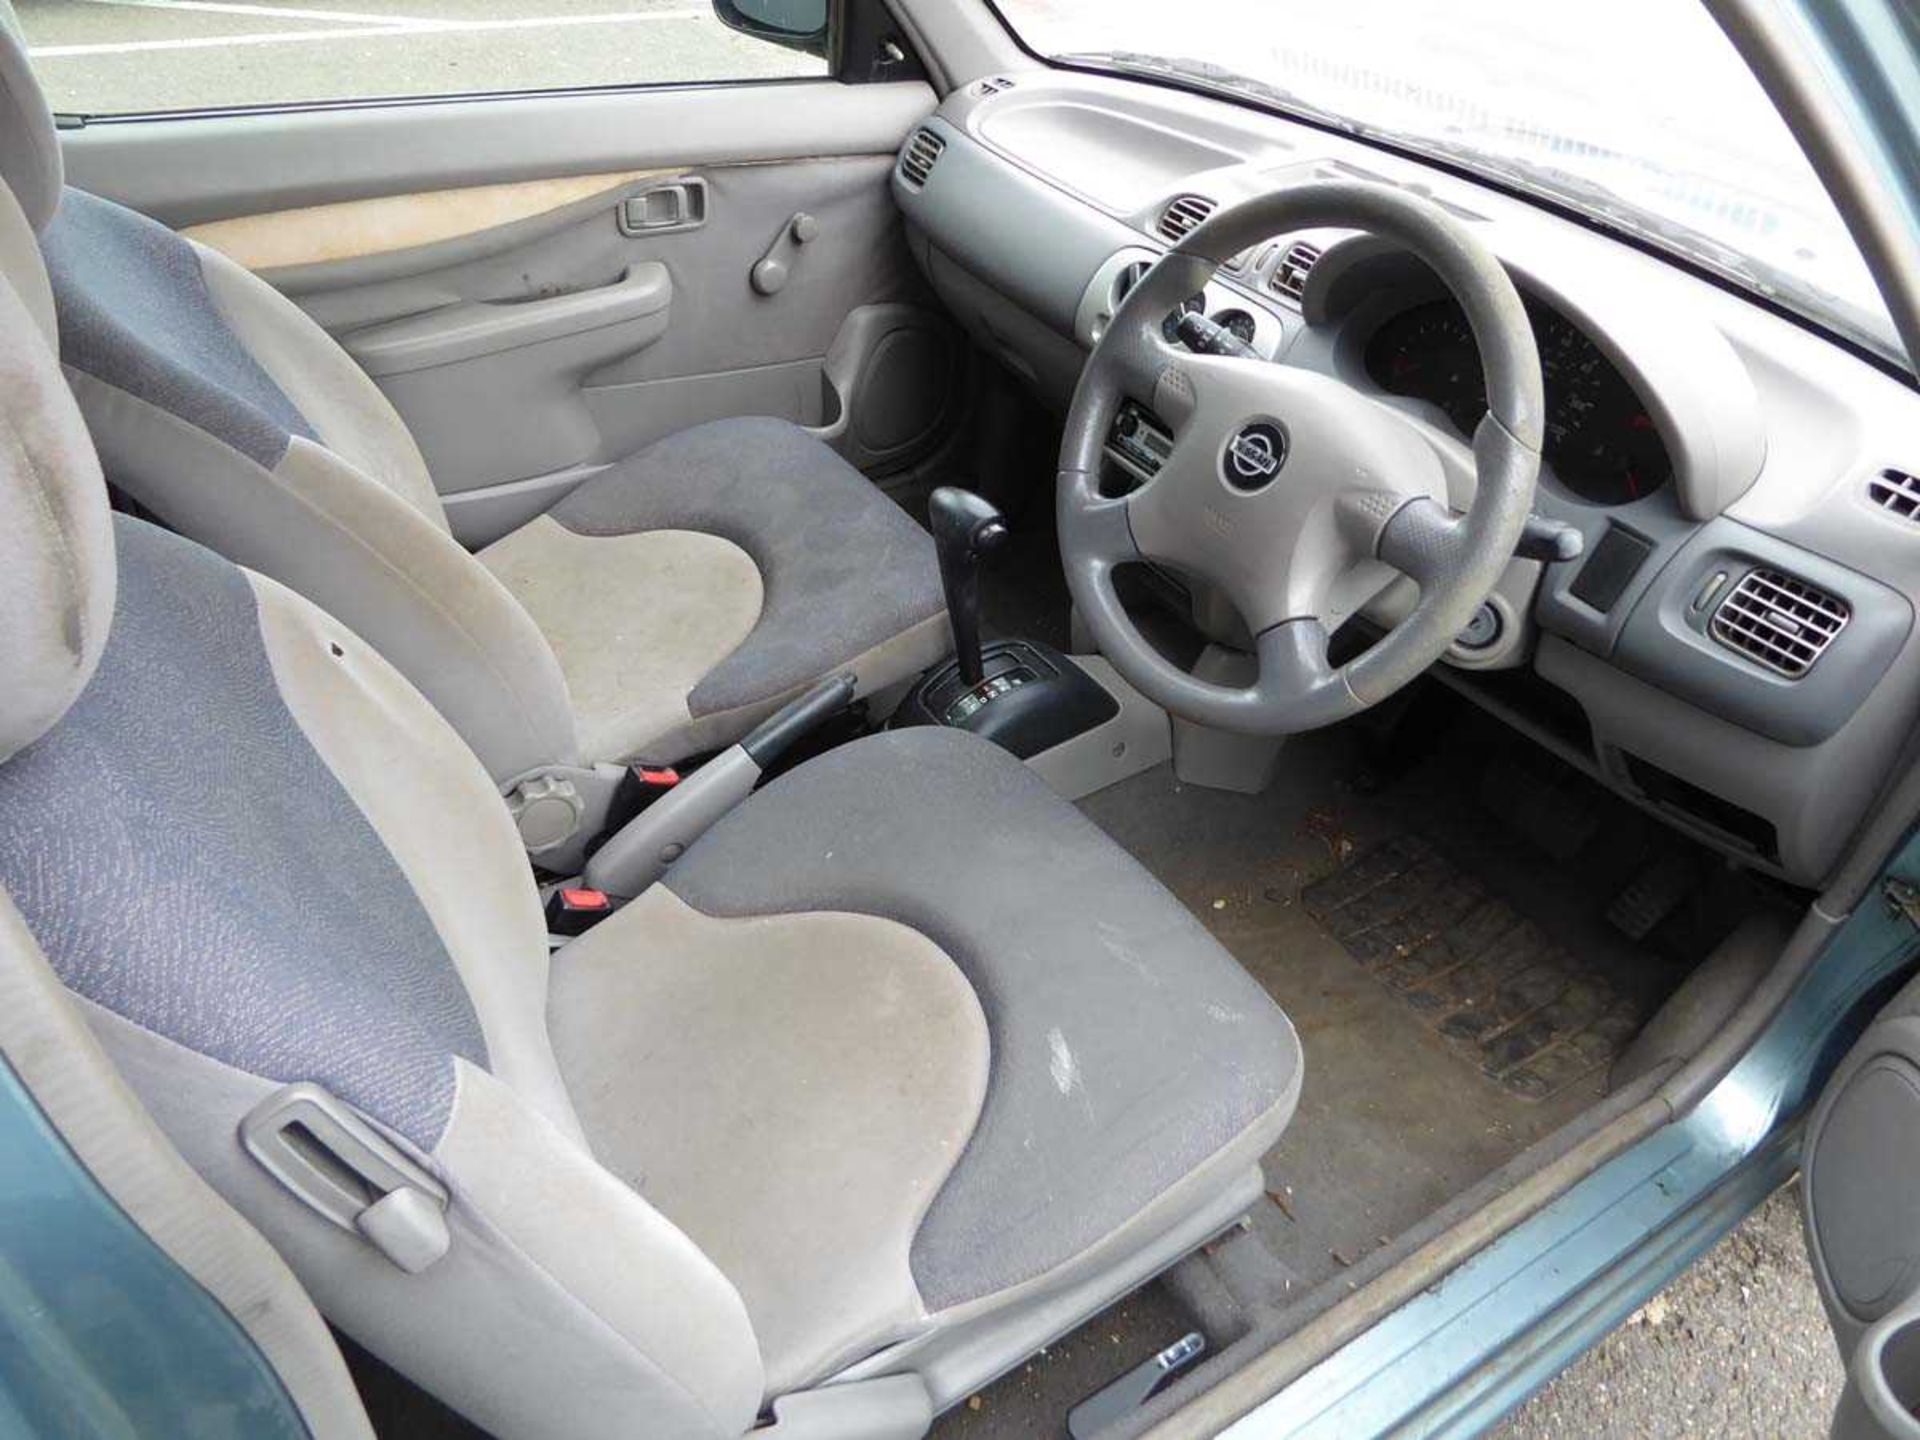 (YT02 YYC) Nissan Micra S Auto, 3-door hatchback in grey, first registered 27/03/2002, 998cc - Bild 6 aus 10